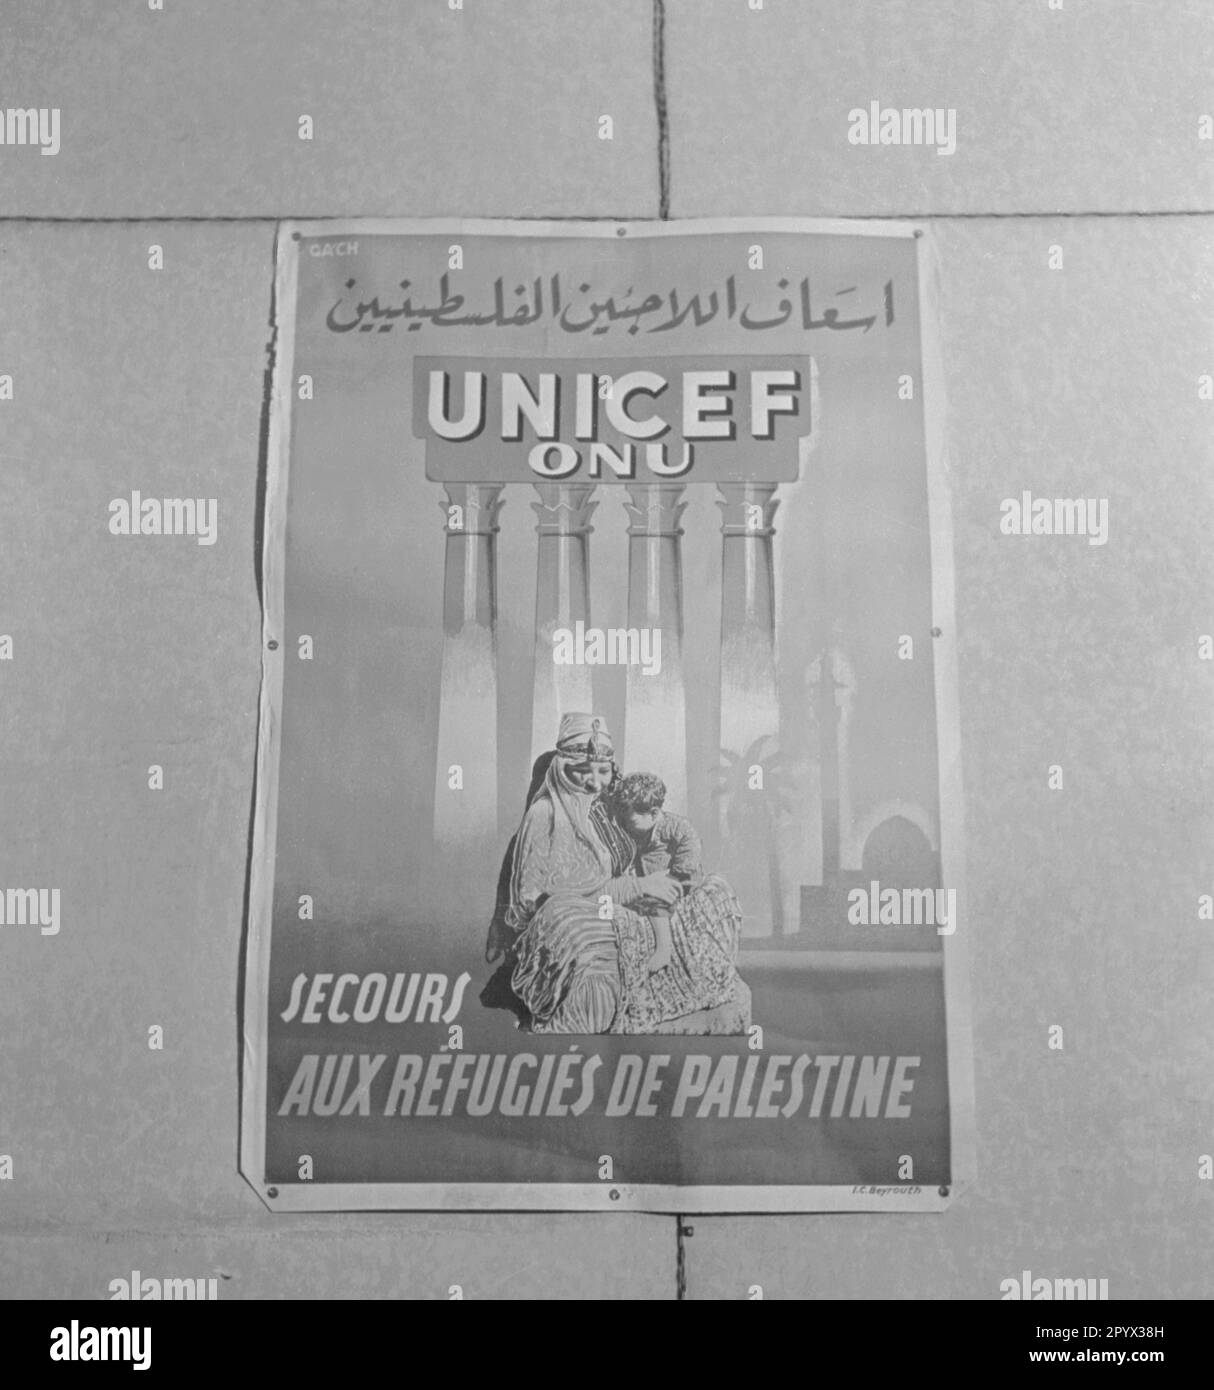 Französisches und arabisches Poster des UNICEF (United Nations Children's Fund / ONU) zur Flüchtlingshilfe in Palästina. Stockfoto